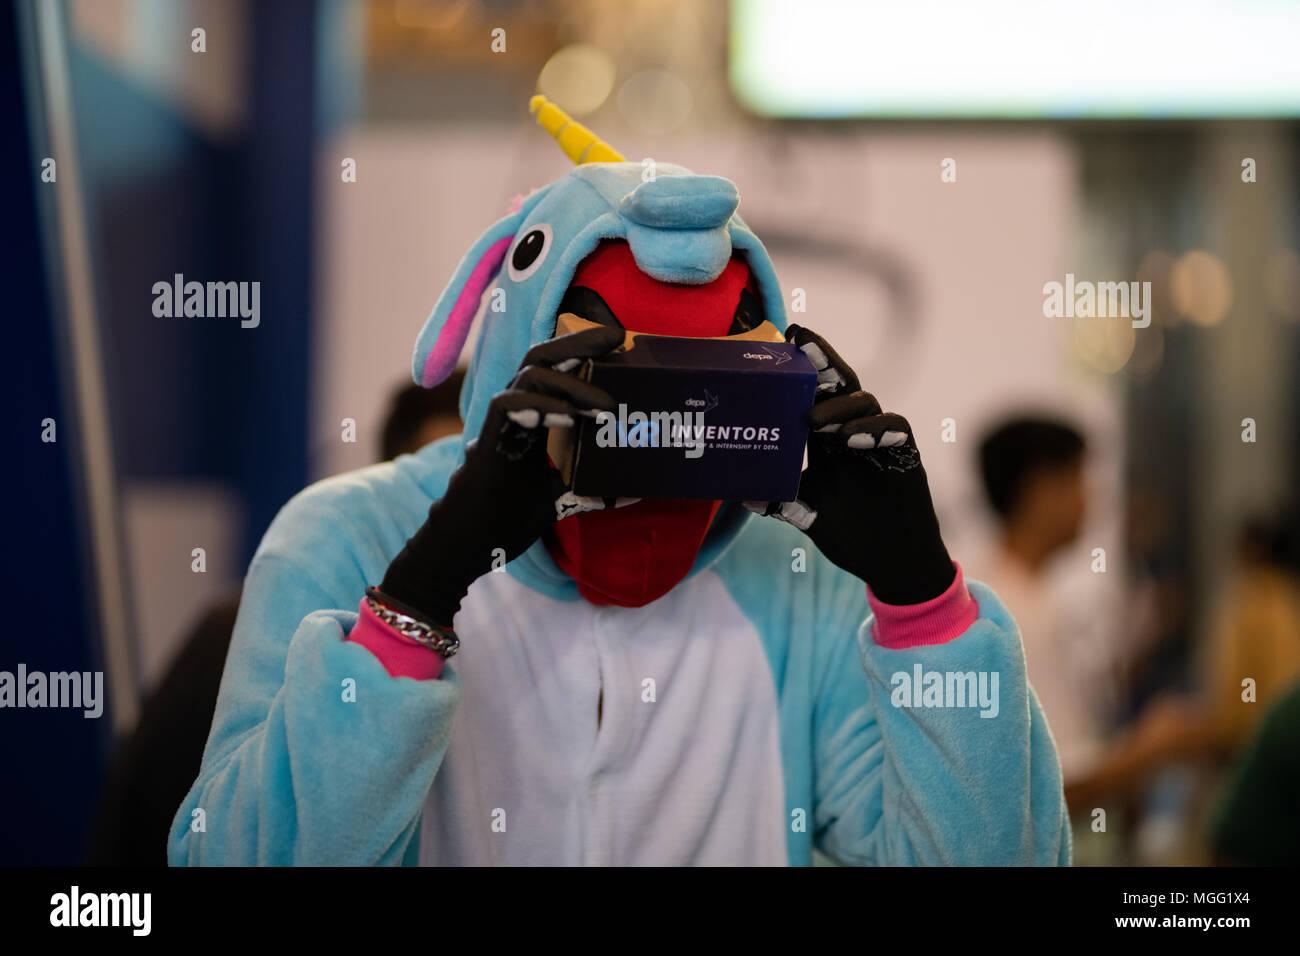 BANGKOK, THAILAND - APRIL 28, 2018: A cosplay character takes part in a virtual reality game at the 2018 Bangkok, Thailand Comic Con. Stock Photo